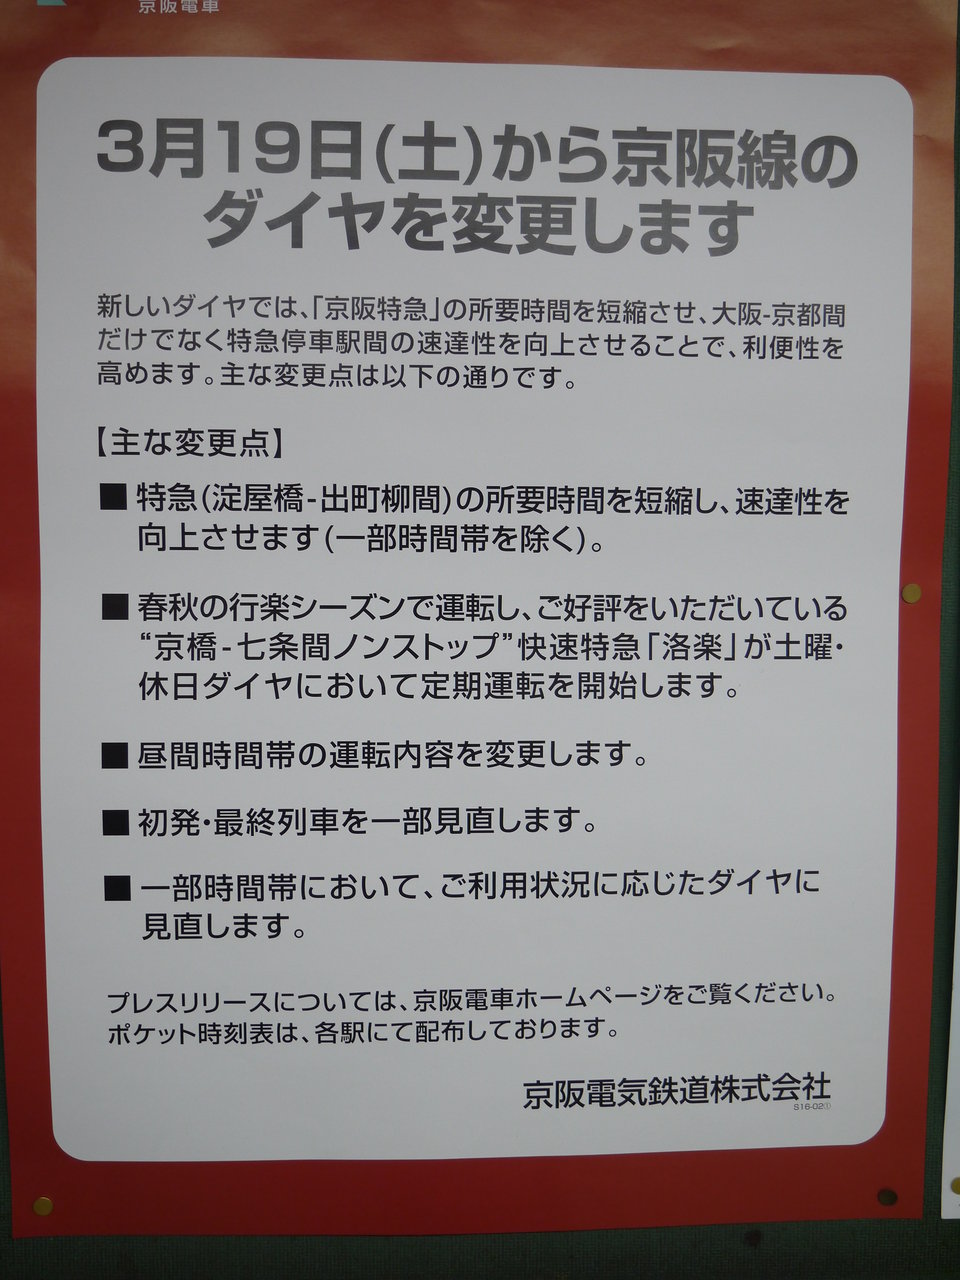 3 19に京阪線のダイヤ改定を実施 昼間は準急6本 Hと各駅停車3本 Hの2種類に 寝屋川つーしん